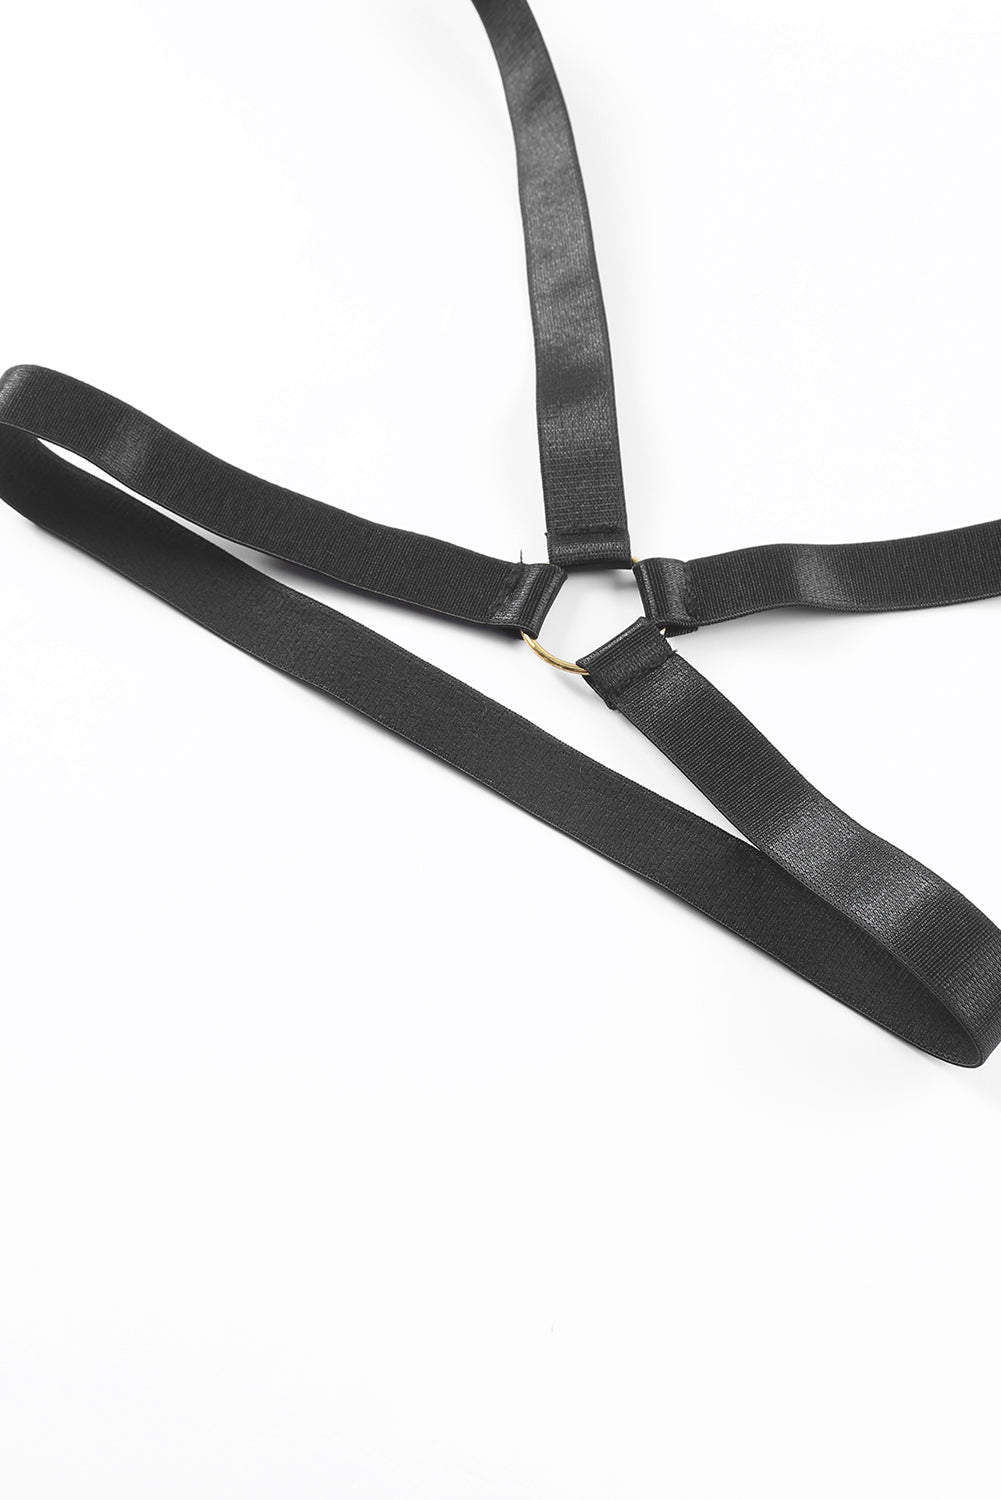 Black Sheer Mesh Strappy Teddy Lingerie with Garter Belt